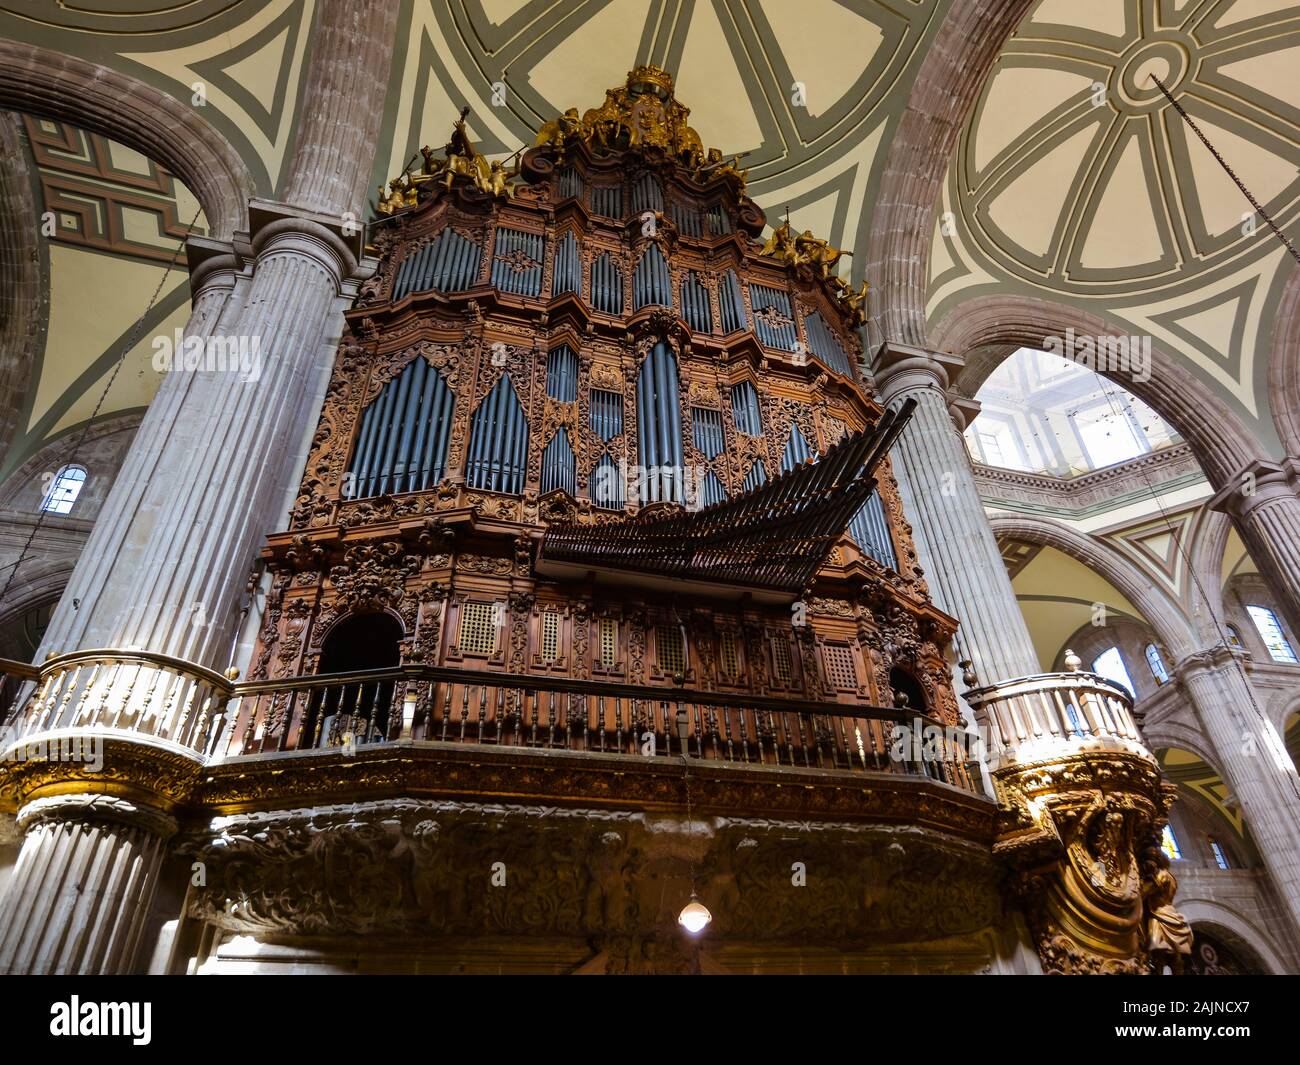 Órgano en la Catedral Metropolitana de la Ciudad de México - Ciudad de México, México Foto de stock